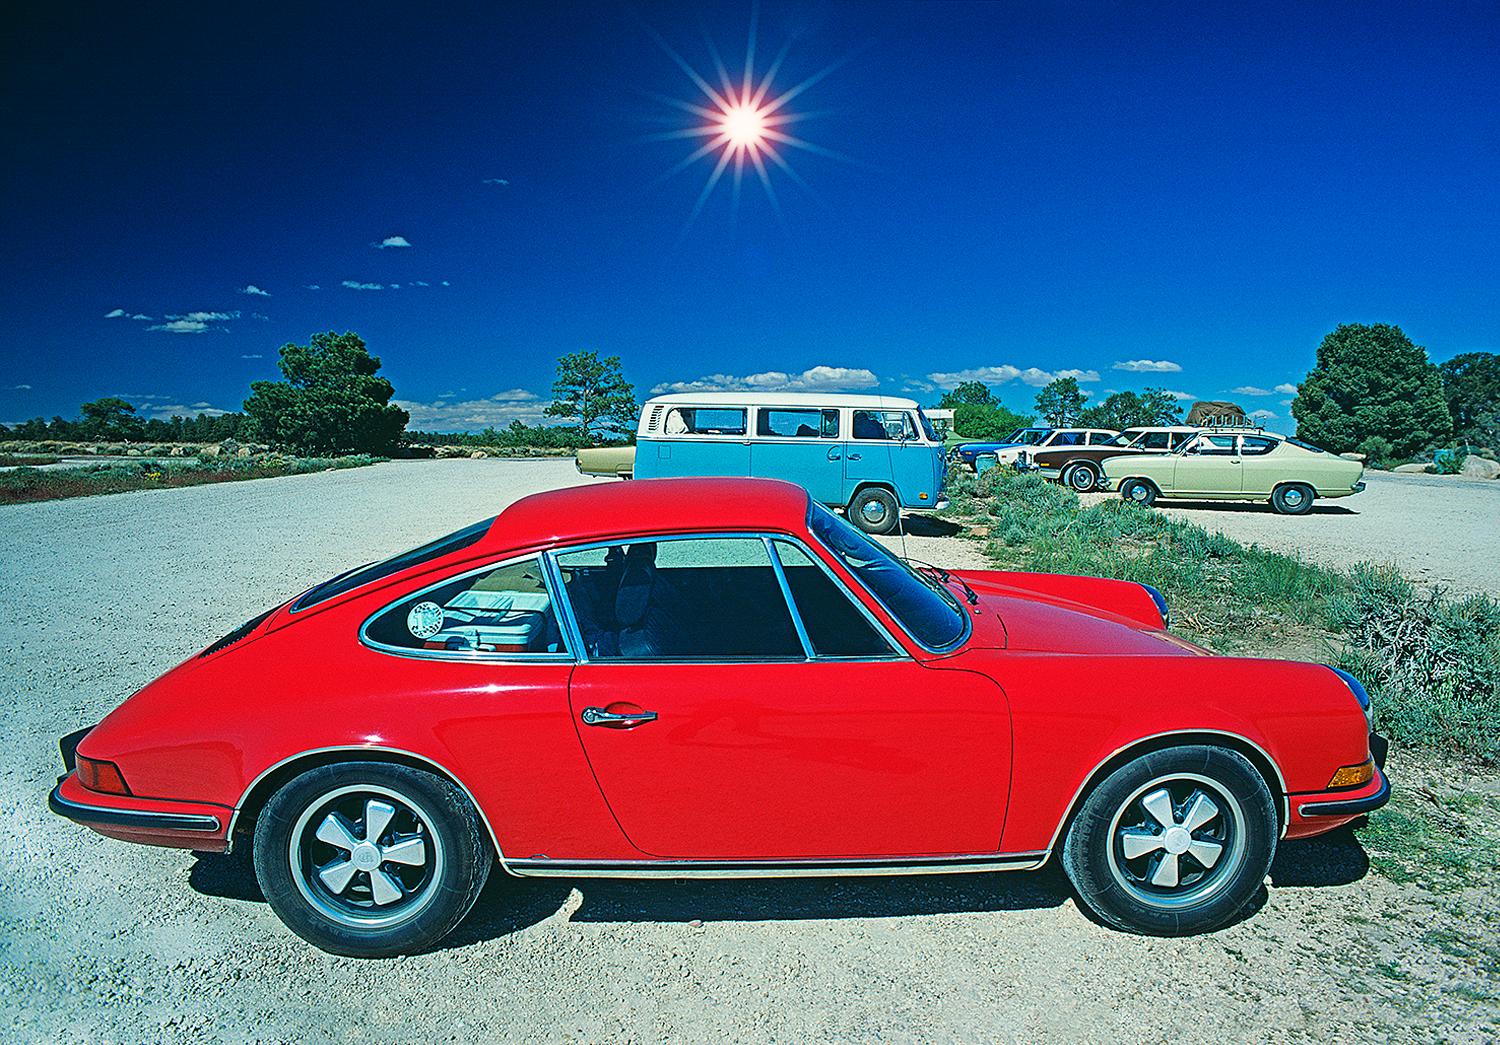 Rotes Porsche-Minibus im Vintage-Stil mit klassischem Volkswagen-Design